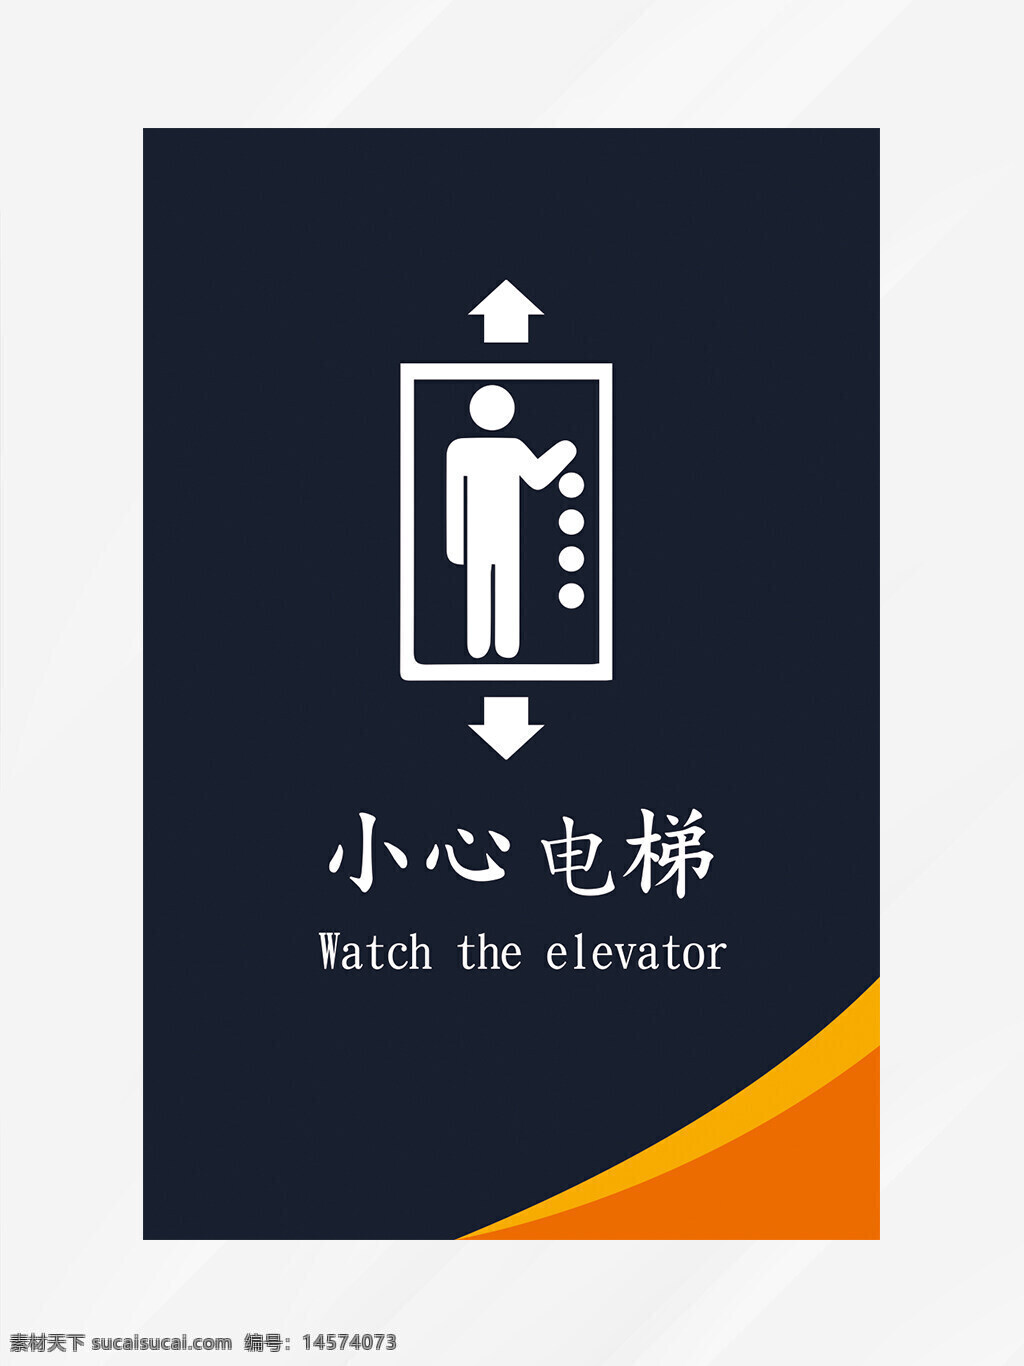 电梯安全注意 温馨提示 电梯安全 电梯标识 电梯标识牌 电梯注意事项 电梯安全标识 电梯提示语 电梯温馨提示 卡通提示语 电梯卡通提示 电梯警示 幼儿园电梯 扶梯 扶手电梯 自动 安全须知